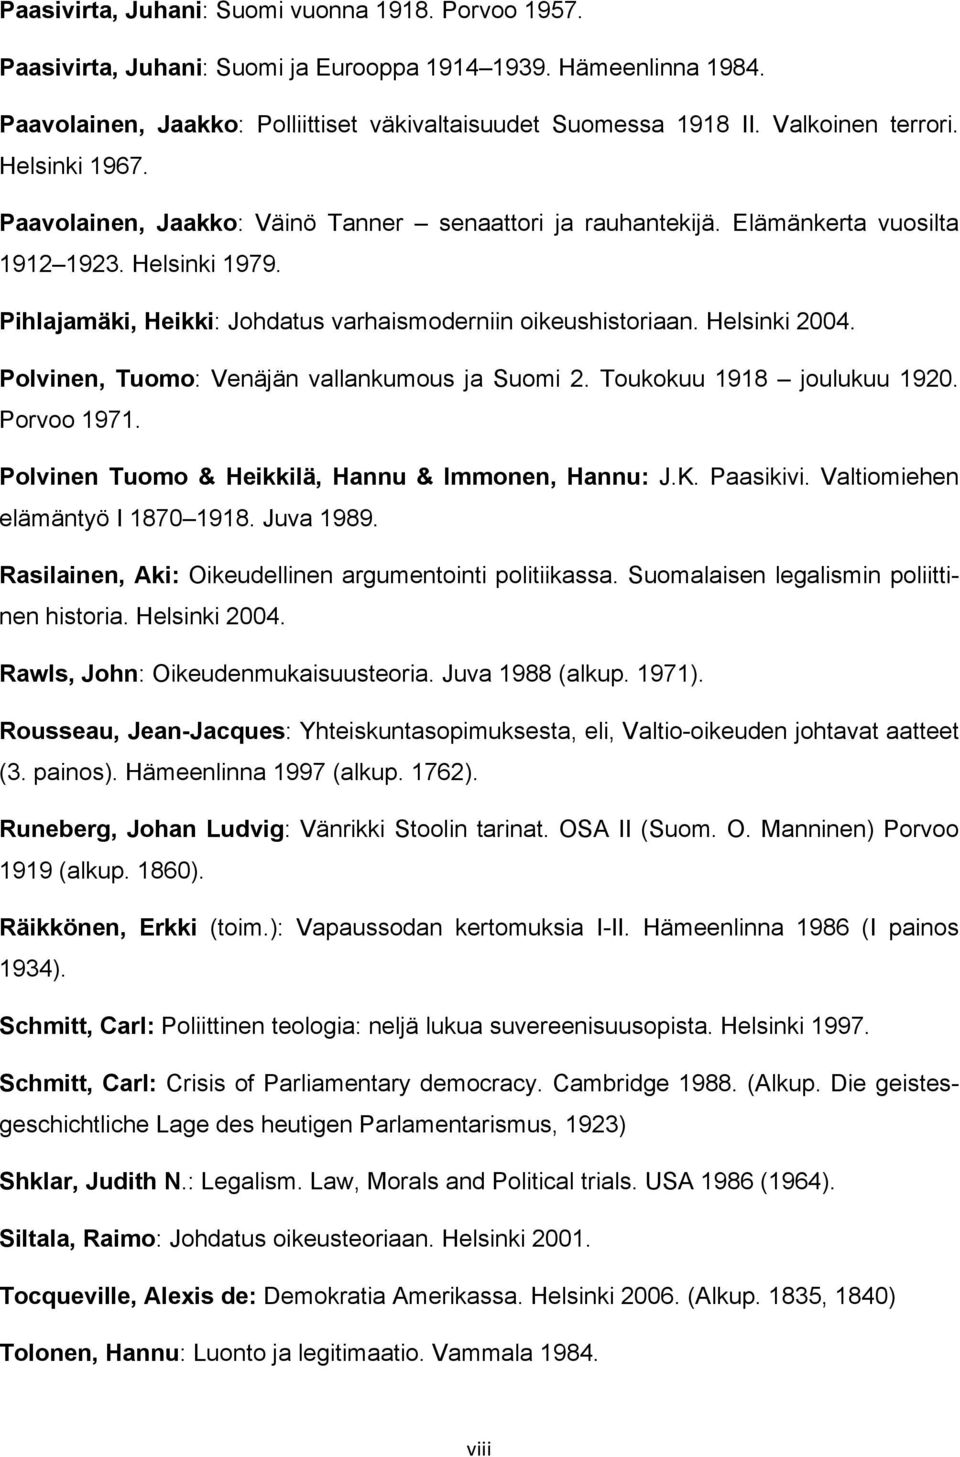 Pihlajamäki, Heikki: Johdatus varhaismoderniin oikeushistoriaan. Helsinki 2004. Polvinen, Tuomo: Venäjän vallankumous ja Suomi 2. Toukokuu 1918 joulukuu 1920. Porvoo 1971.